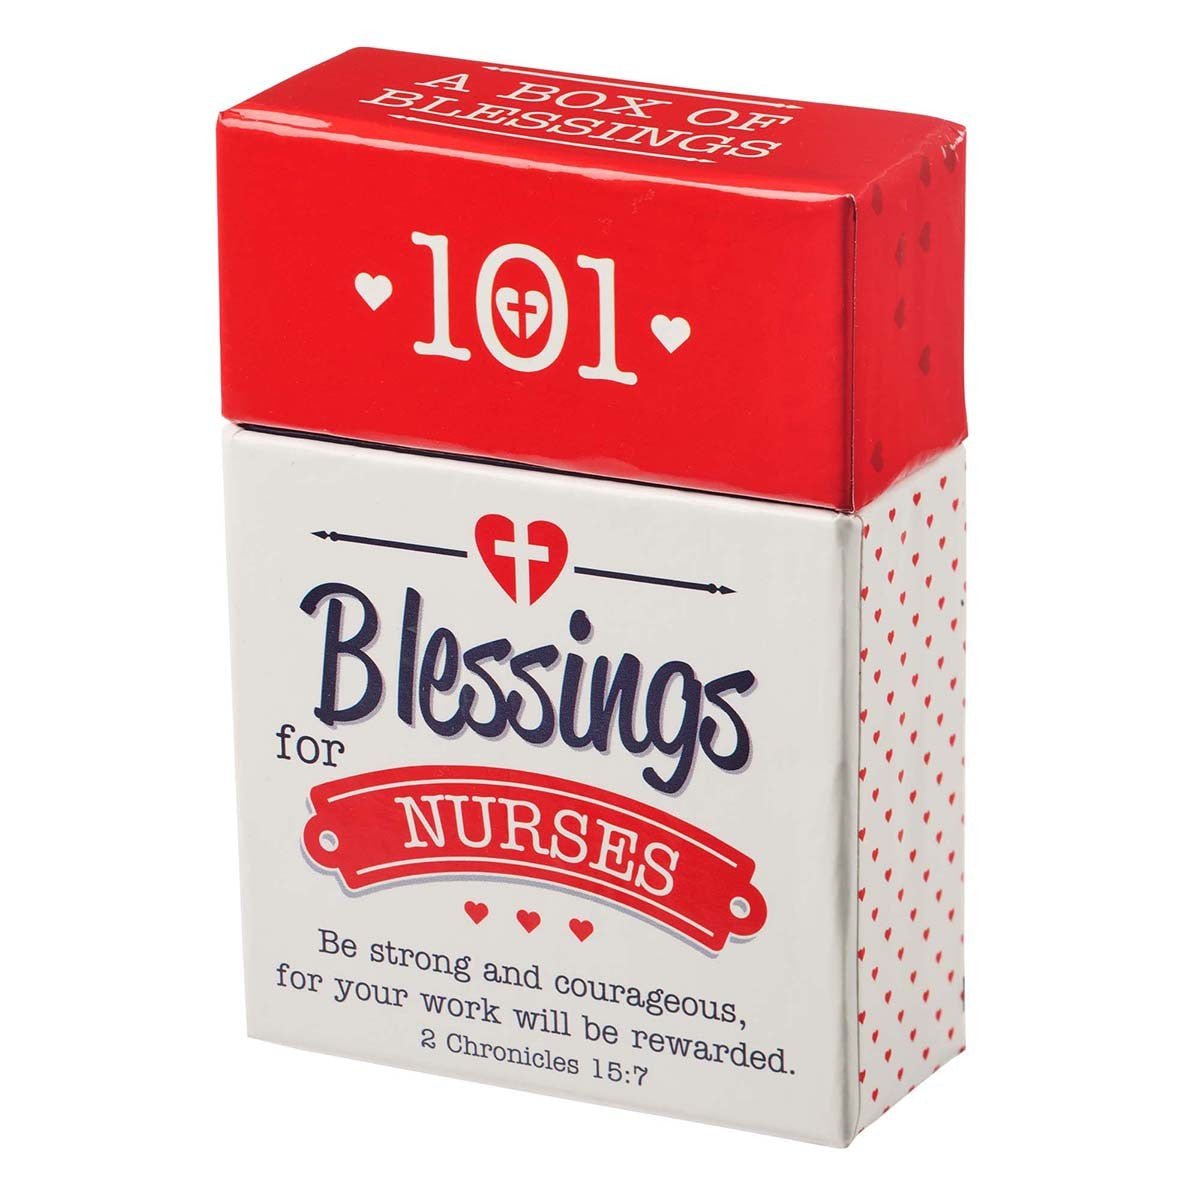 101 Blessings for Nurses Box of Blessings - 2 Chronicles 15:7 | 2FruitBearers